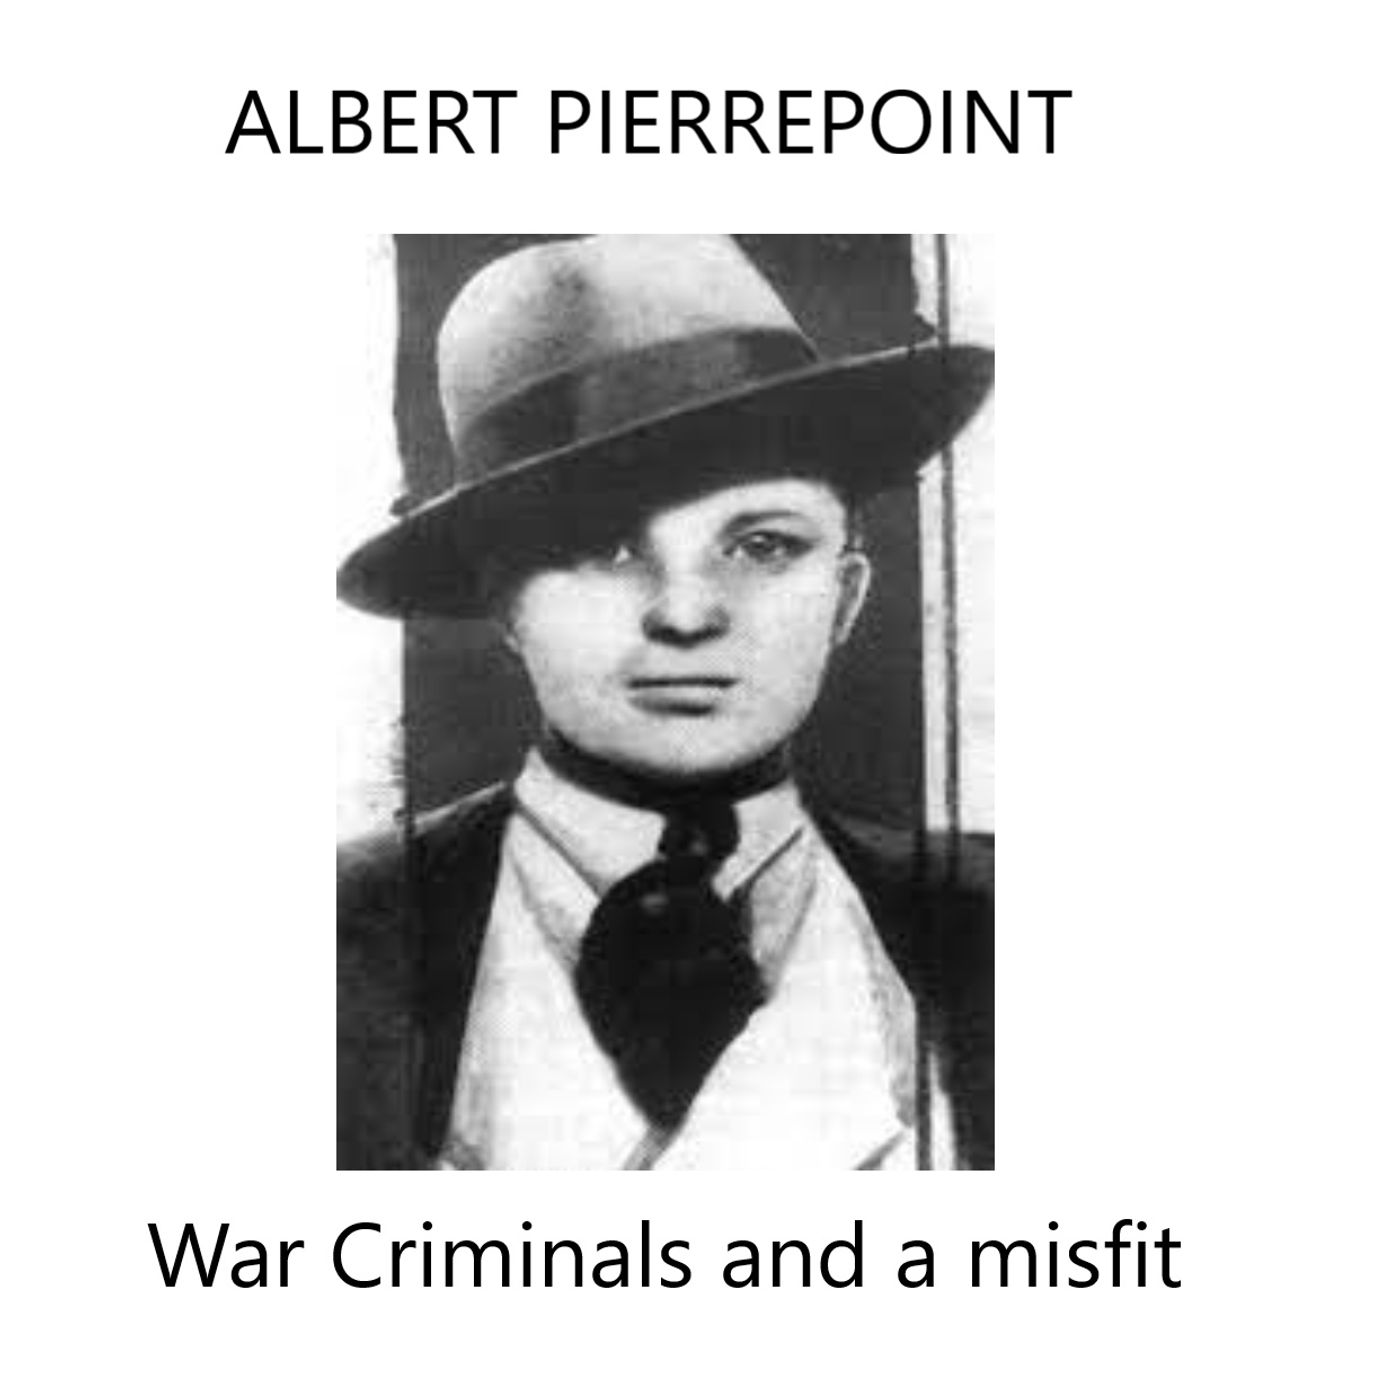 Albert Pierrepoint: War criminals and a misfit.